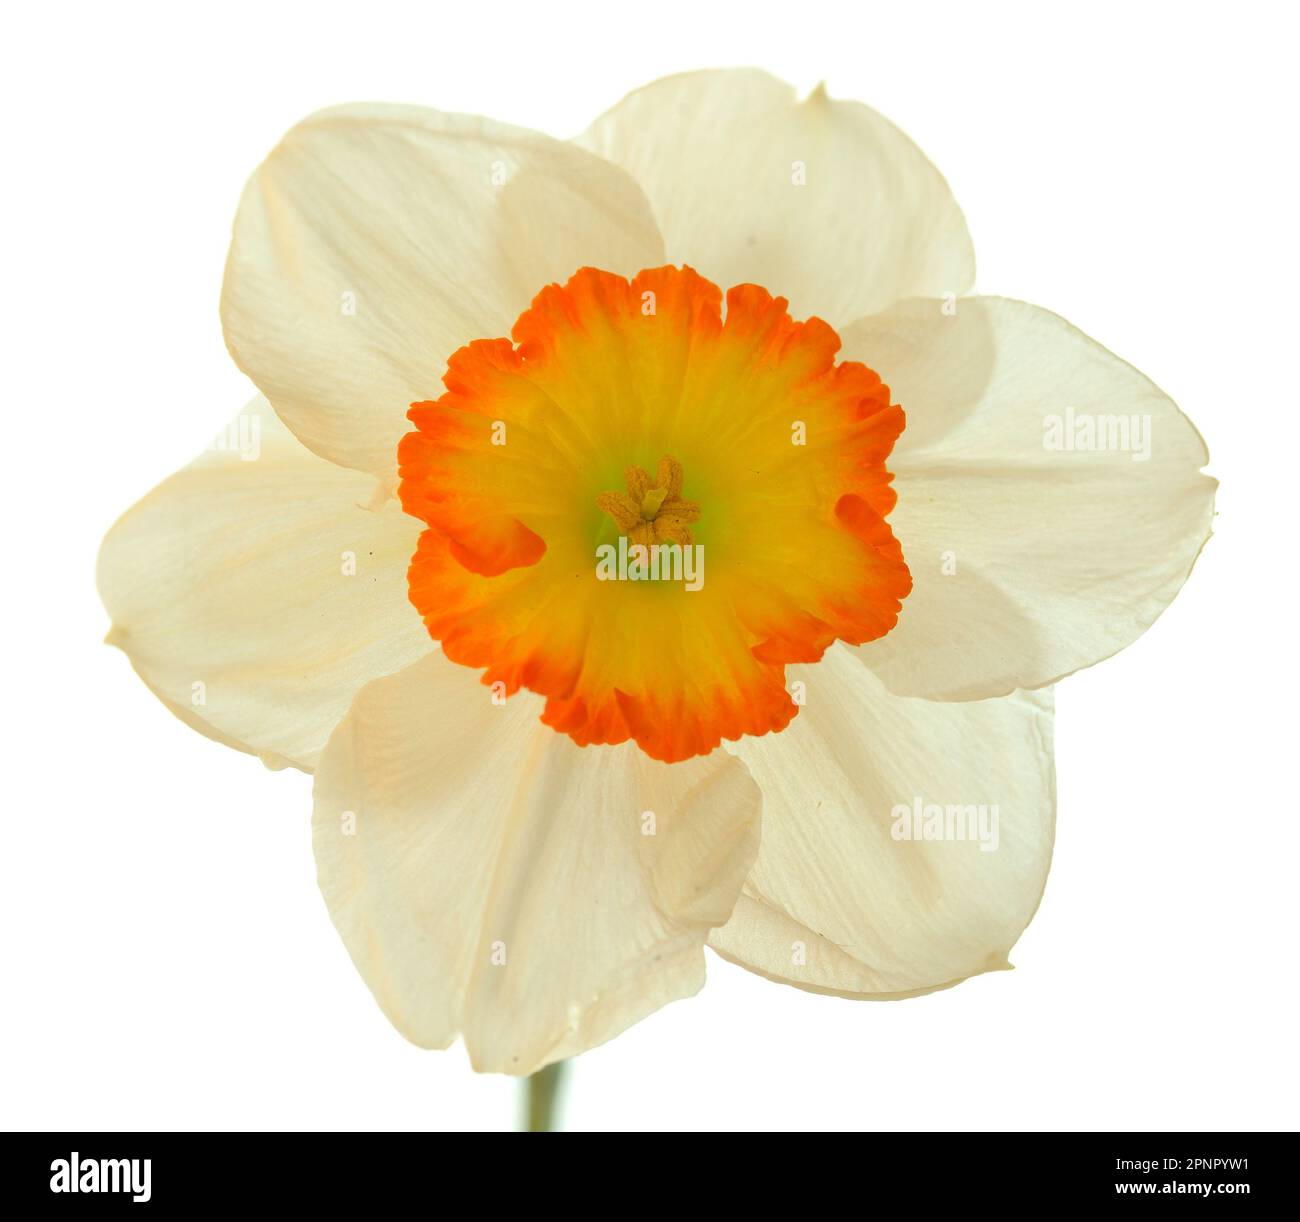 Un solo daffodil bianco con un centro giallo arancione retroilluminato su uno sfondo bianco che rende i petali traslucidi. Foto Stock